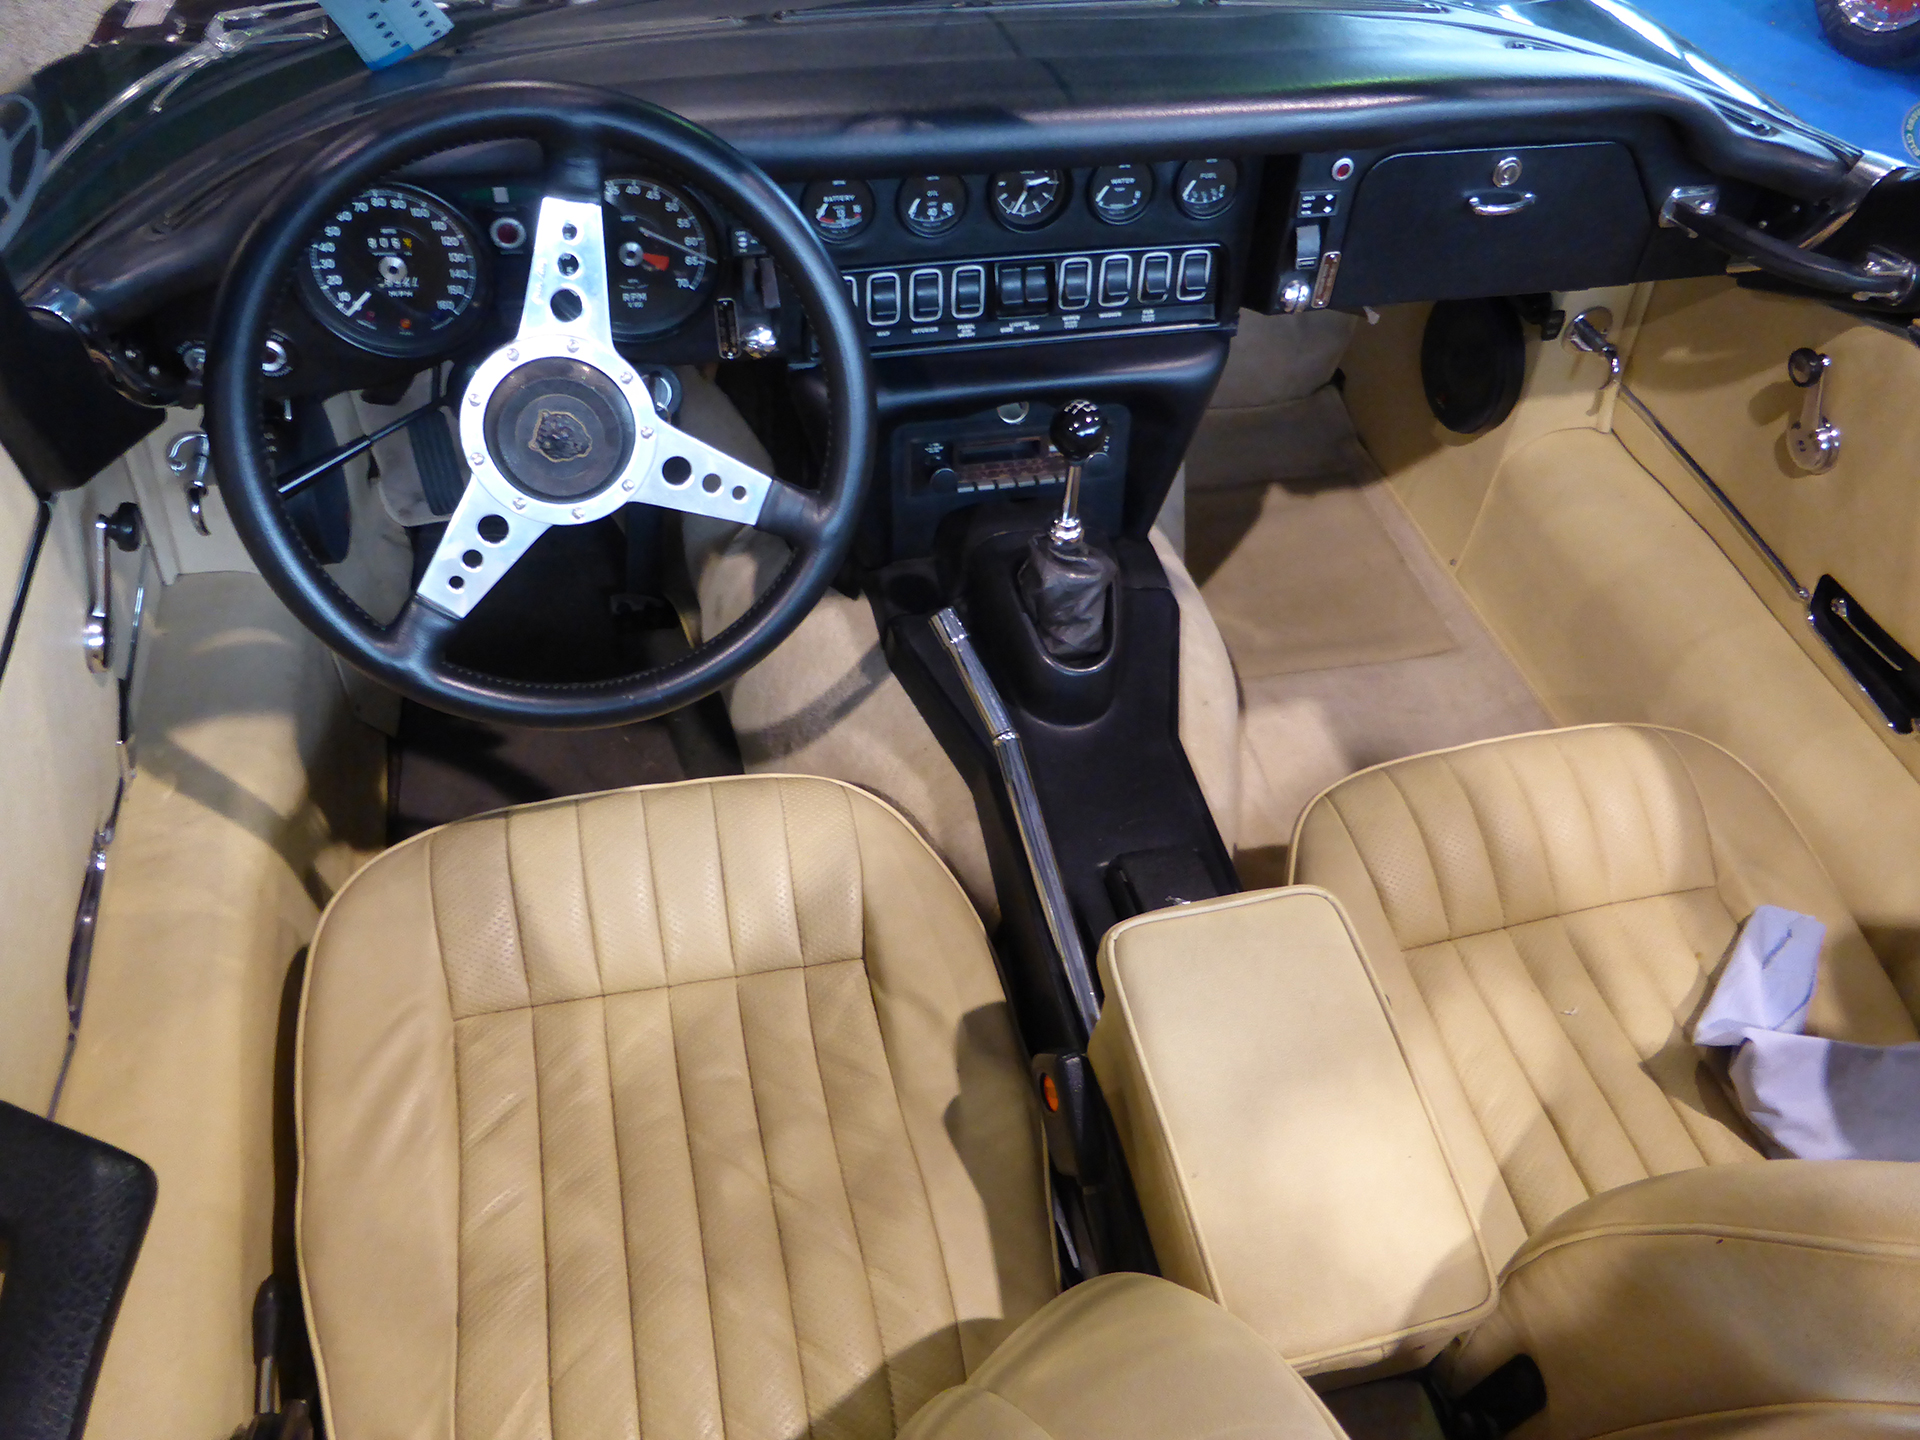 DM - photo - Jaguar E Type - interior / intérieur - Ouest Motors Festival 2015